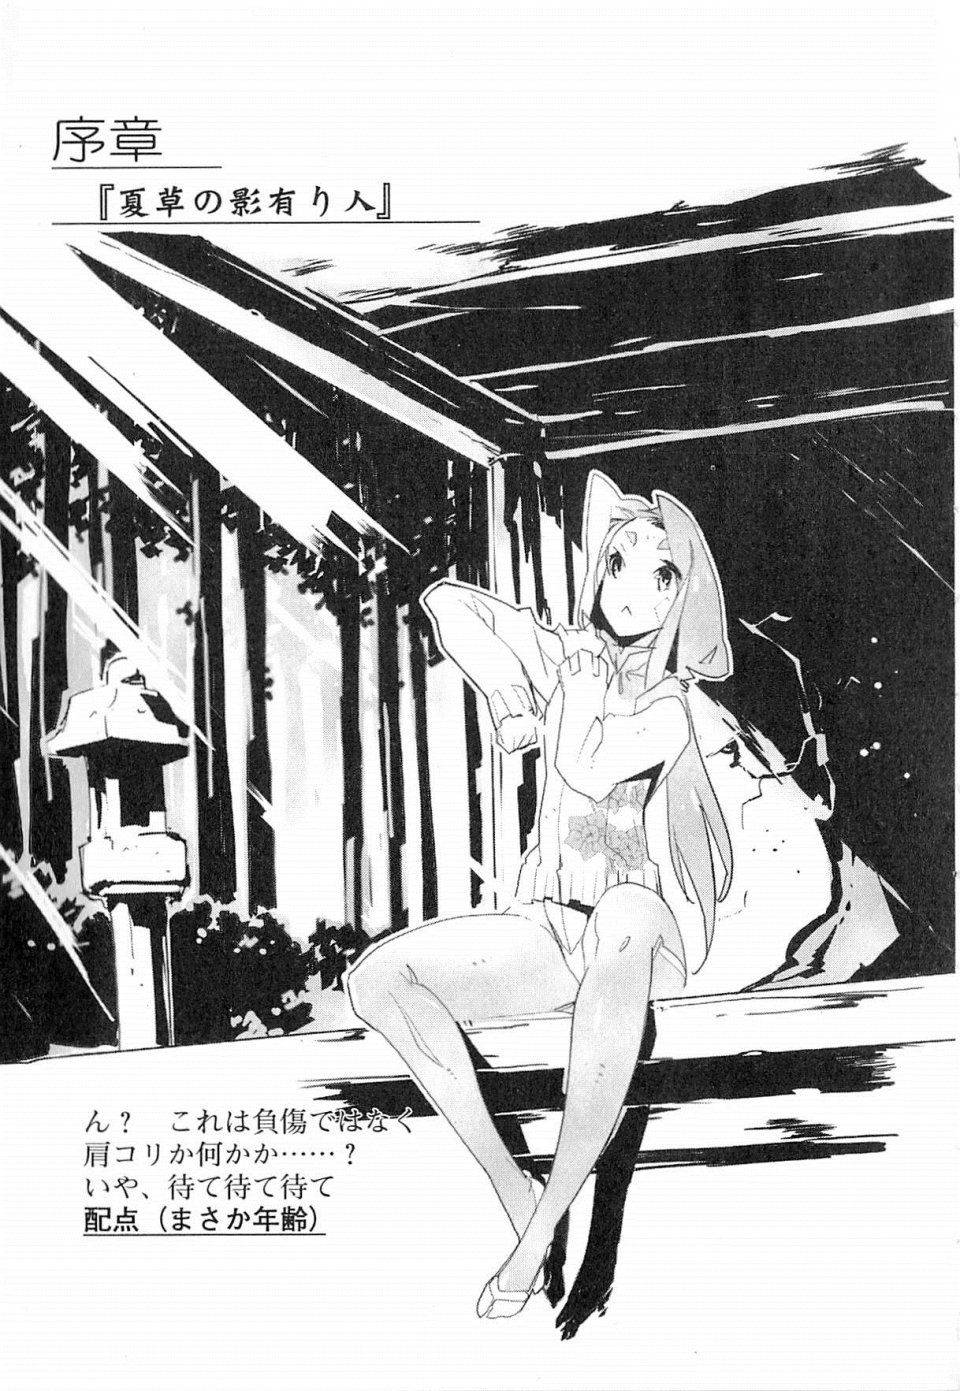 Kyoukai Senjou no Horizon LN Vol 19(8A) - Photo #19